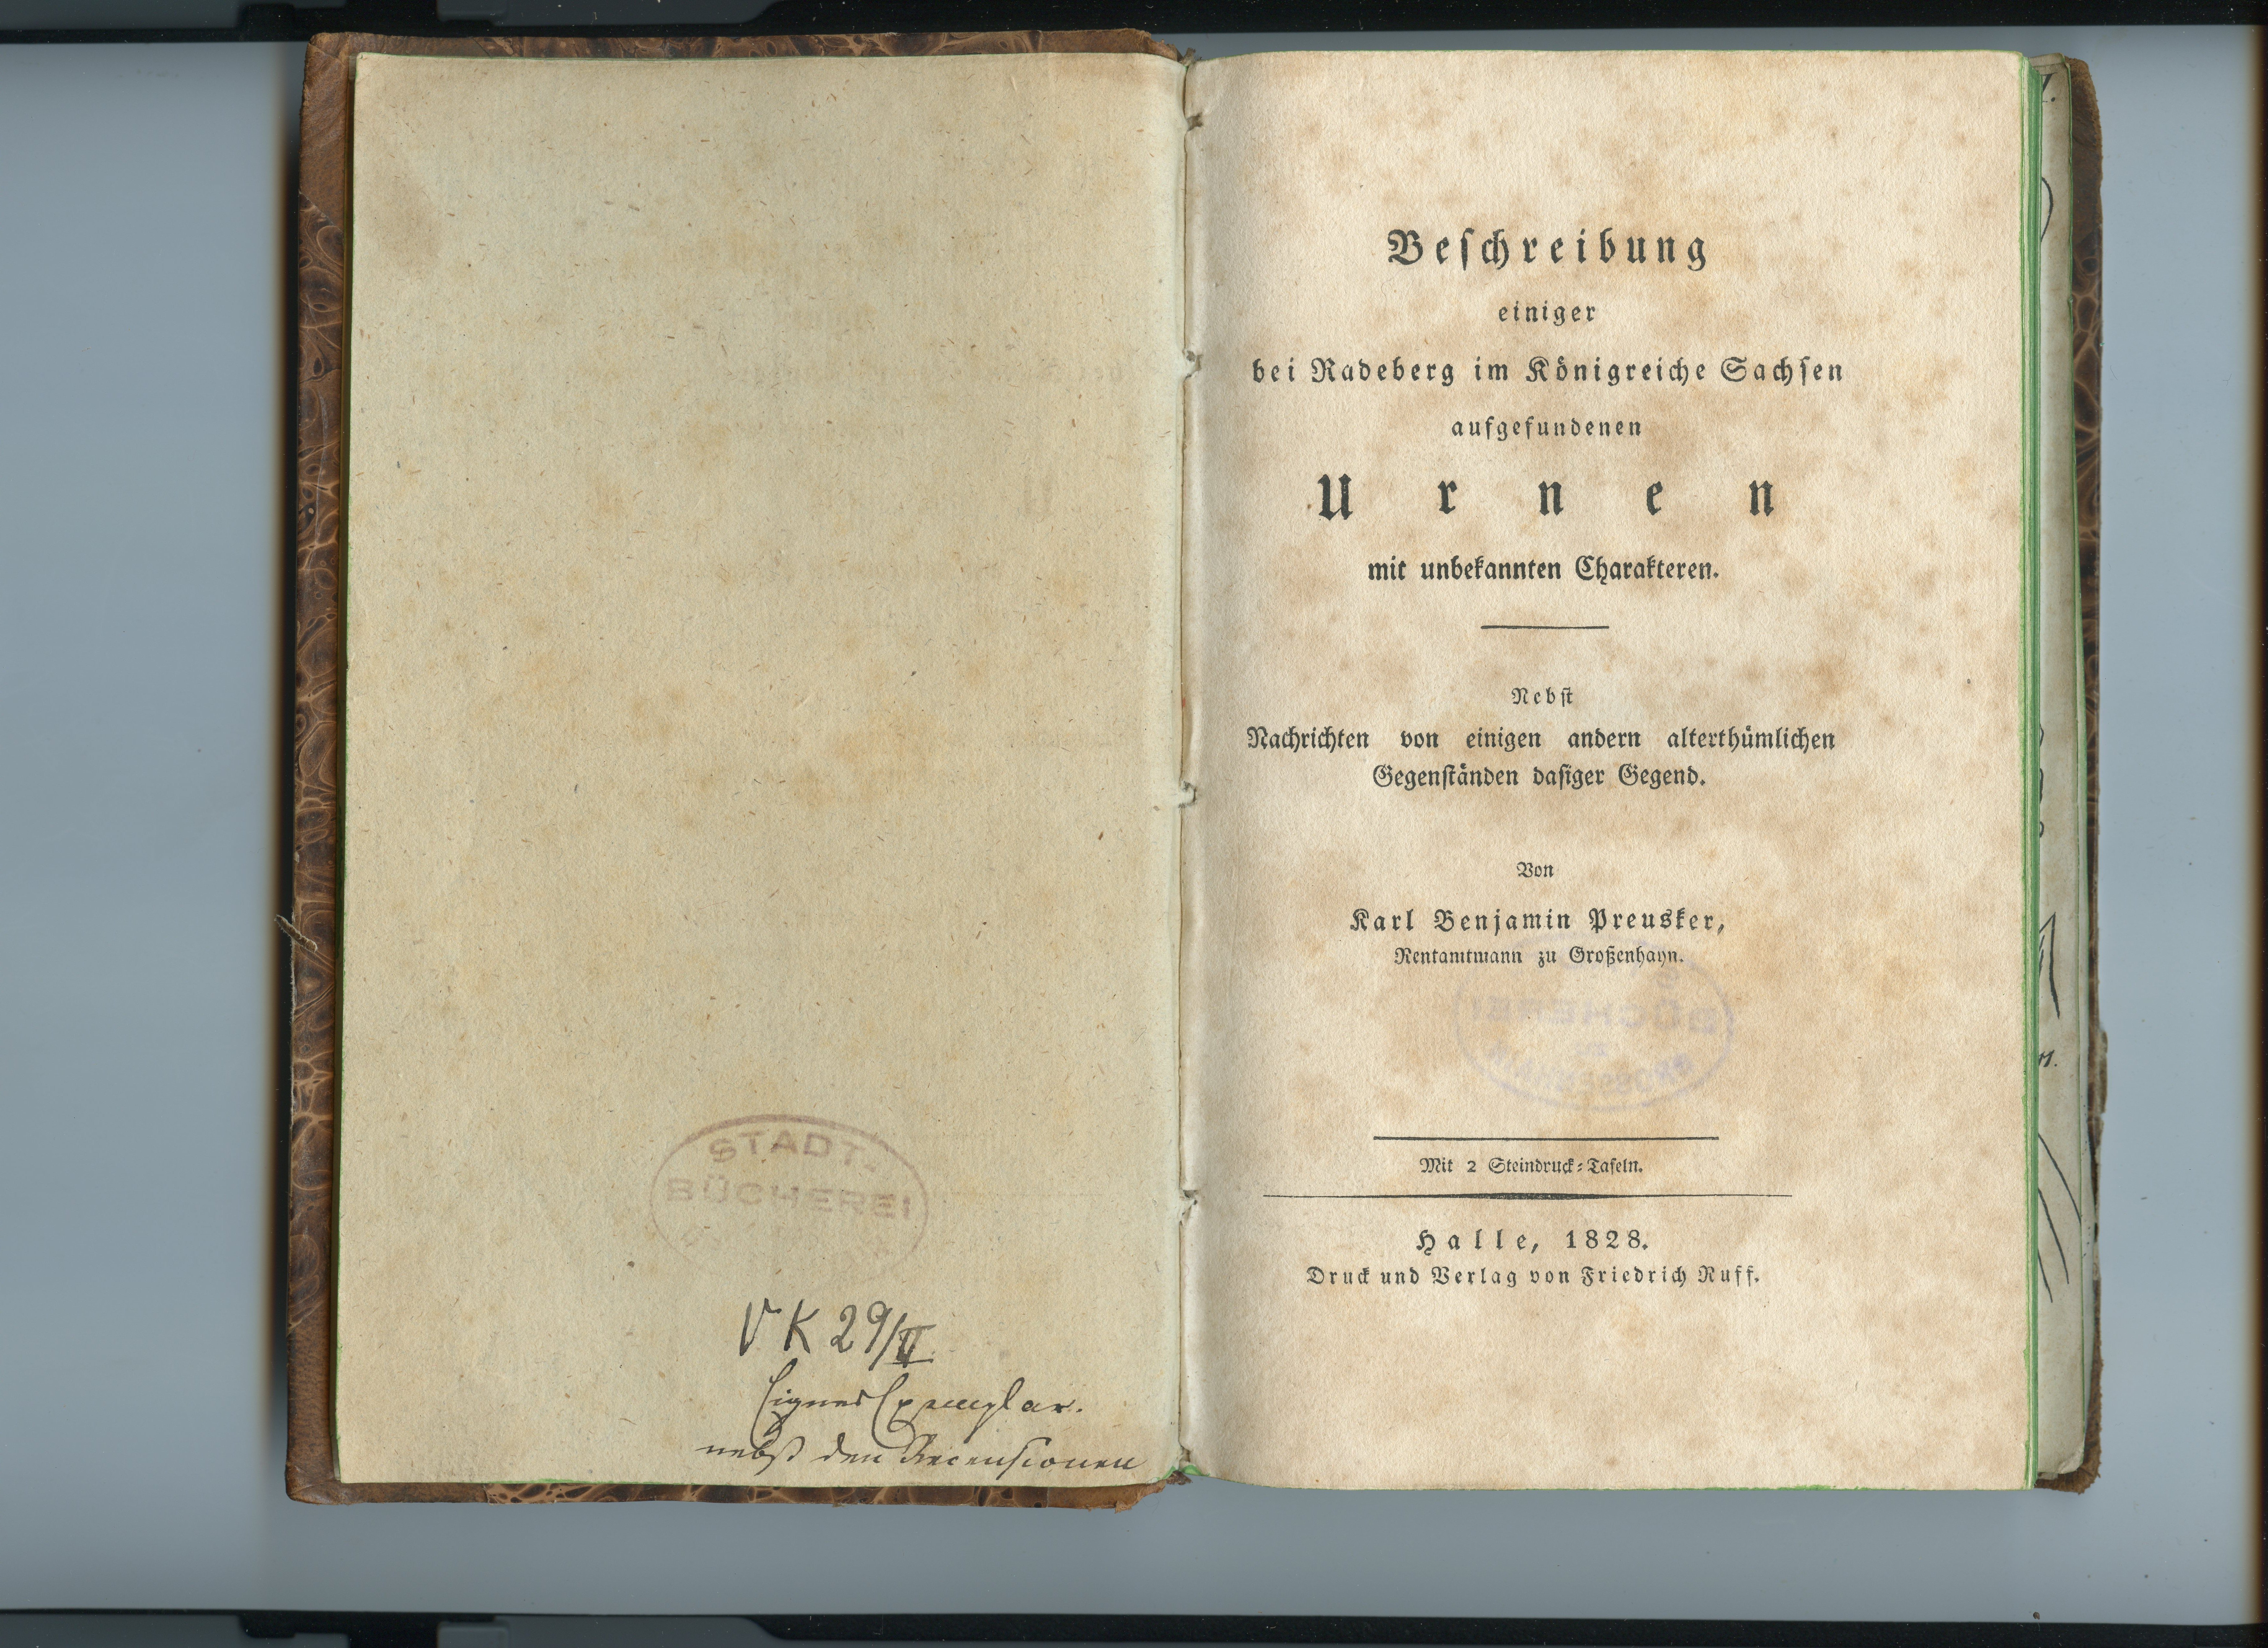 Preusker, Karl: Beschreibung einiger bei Radeberg im Königreiche Sachsen aufgefundenen Urnen [...], 1828 (Museum Alte Lateinschule CC BY-NC-SA)